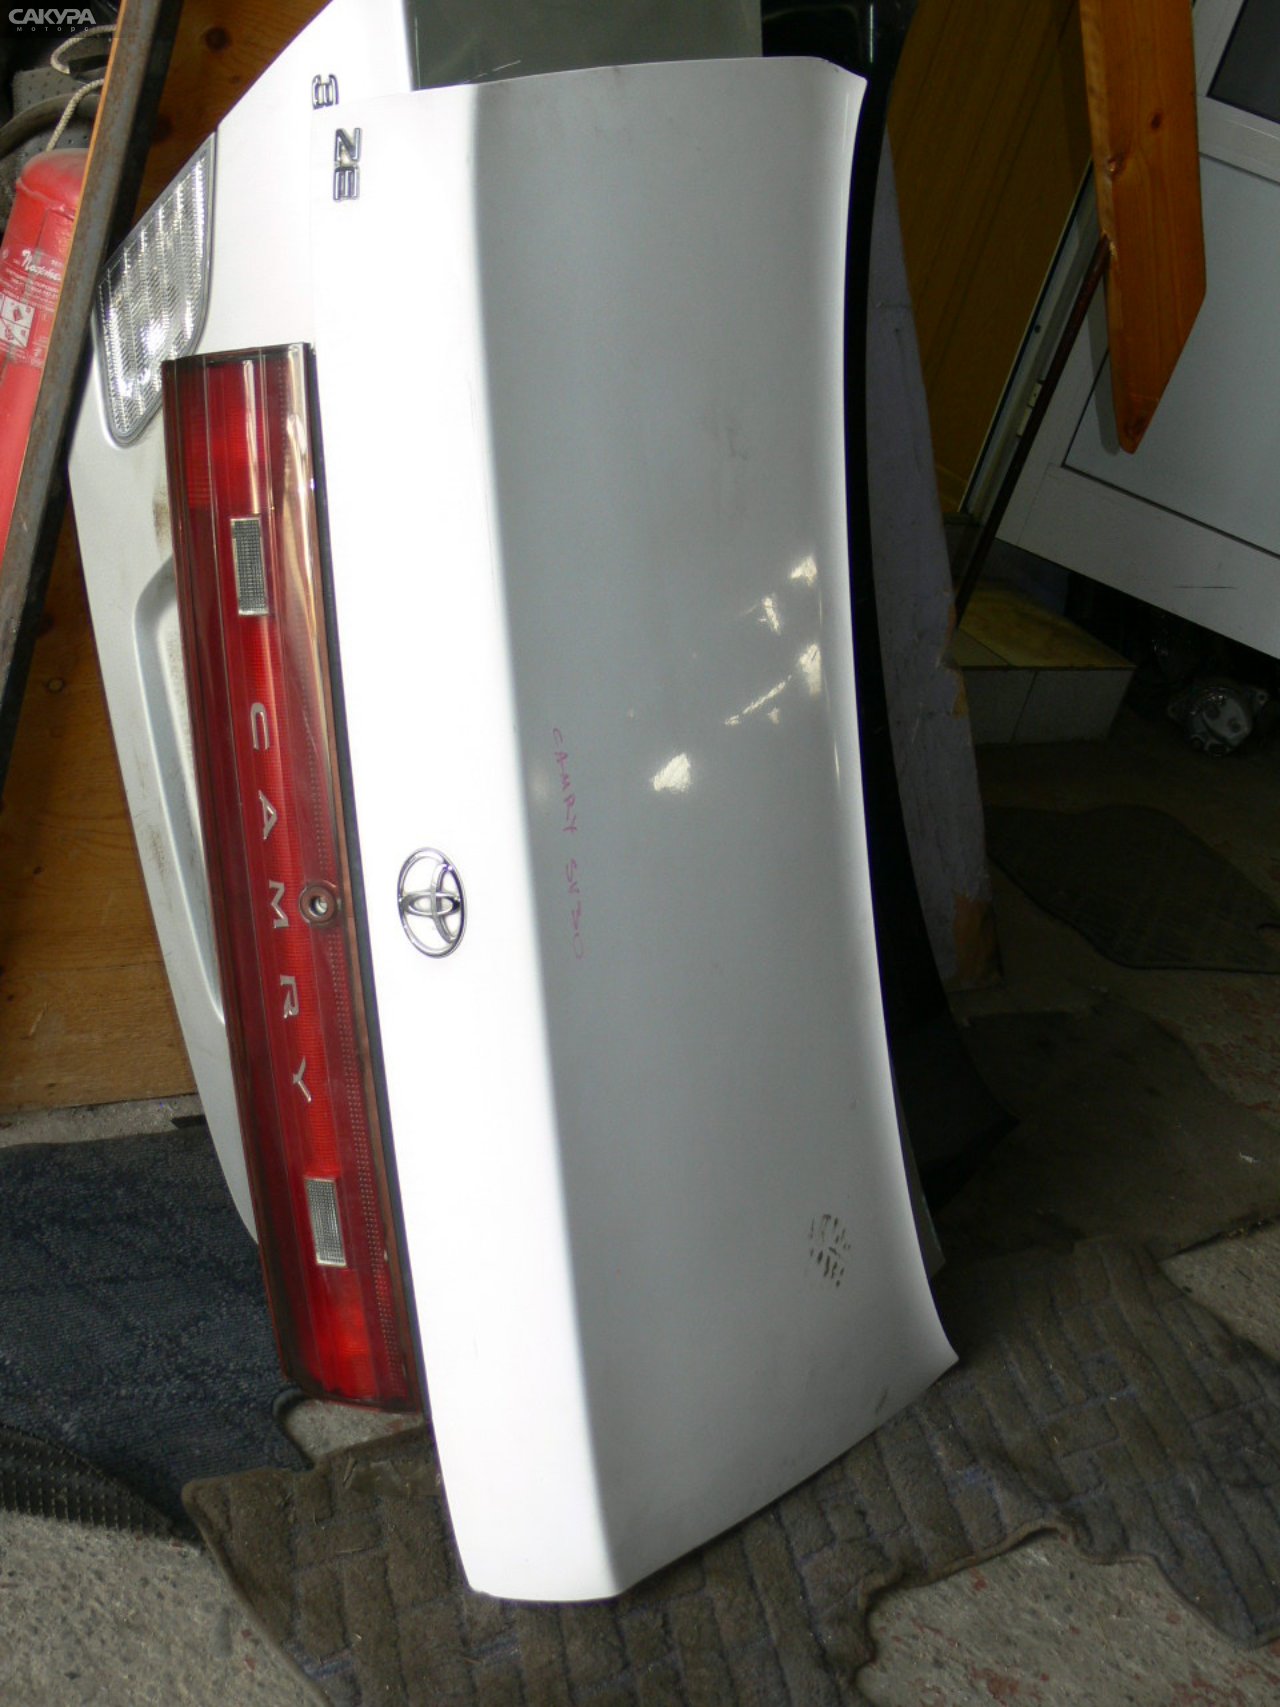 Крышка багажника Toyota Camry SV30 4S-FE: купить в Сакура Иркутск.